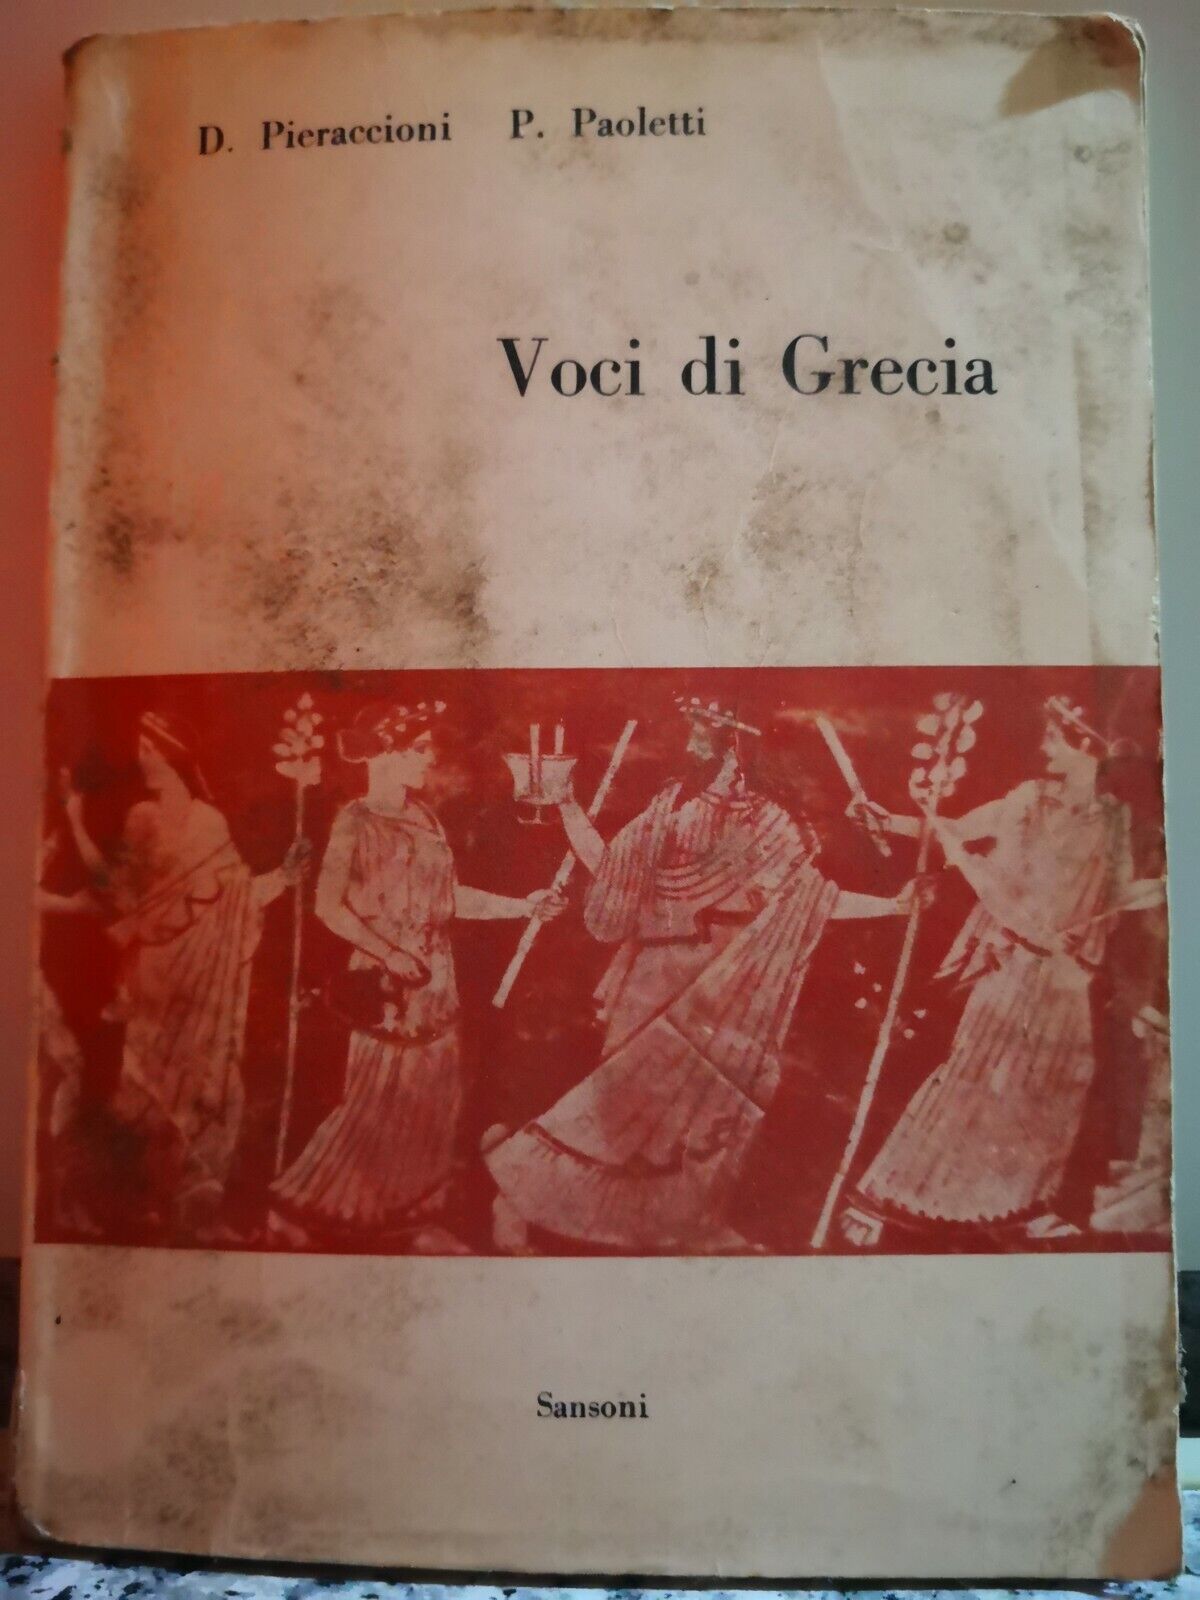 Voci di Grecia  di D. Pieraccioni P. Paoletti,  1966,  Sansoni Editori-F